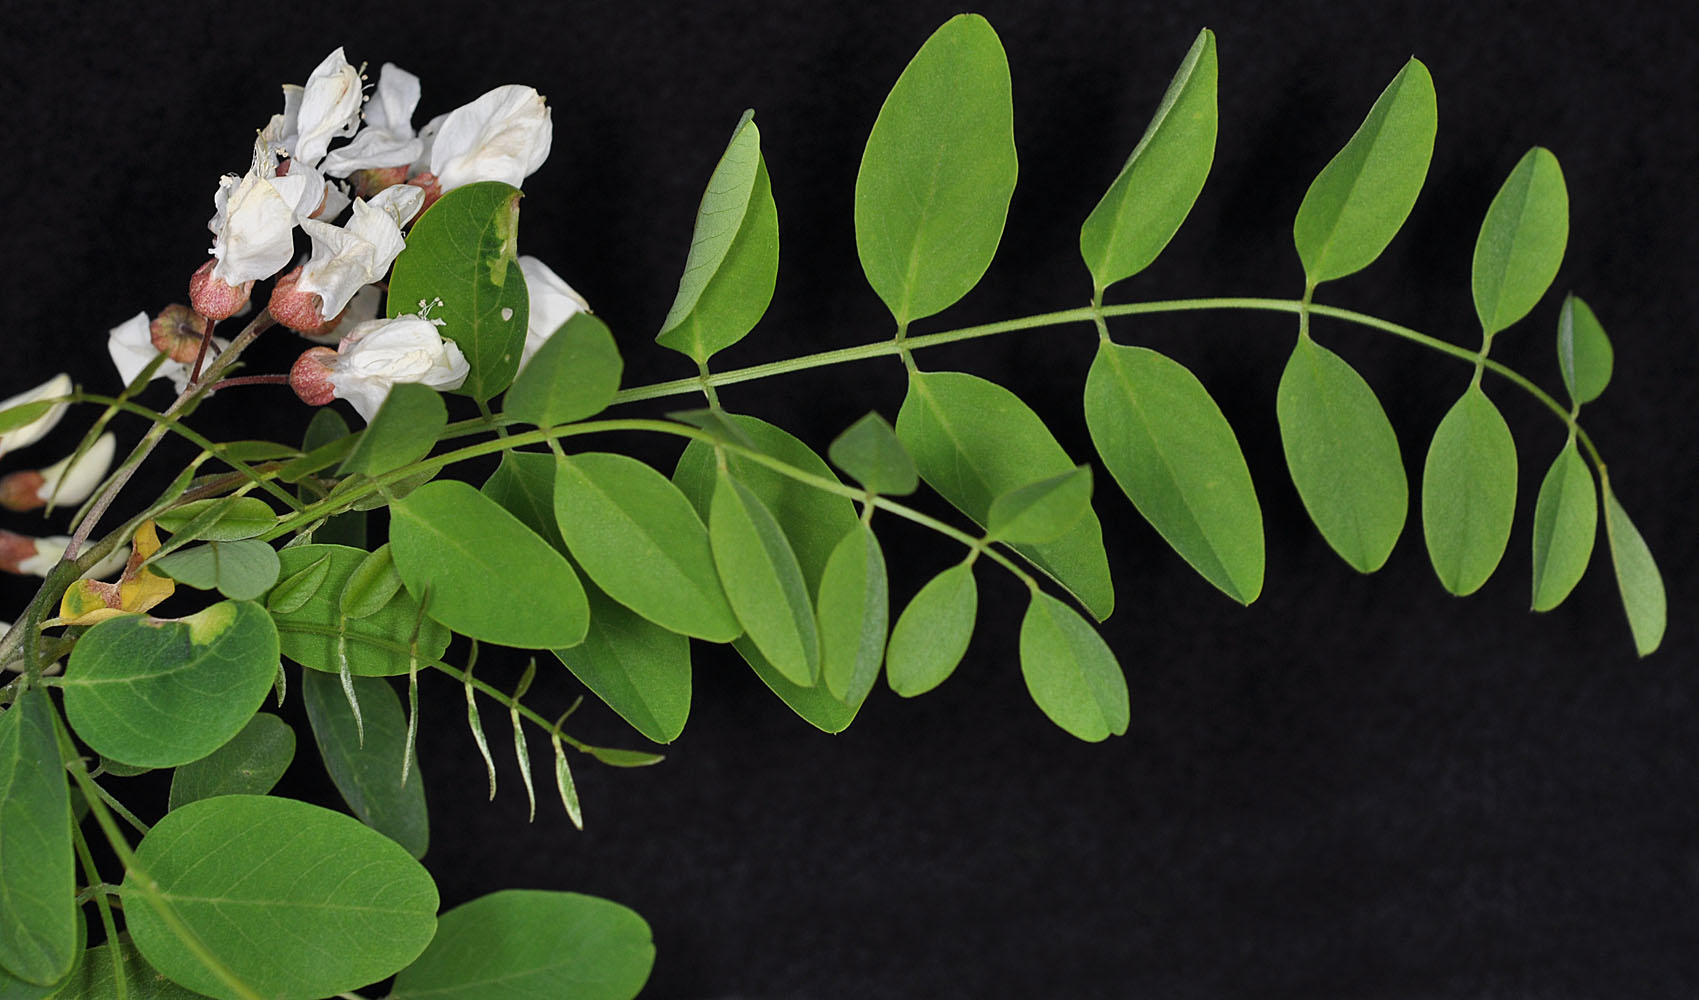 Flora of Eastern Washington Image: Robinia pseudoacacia